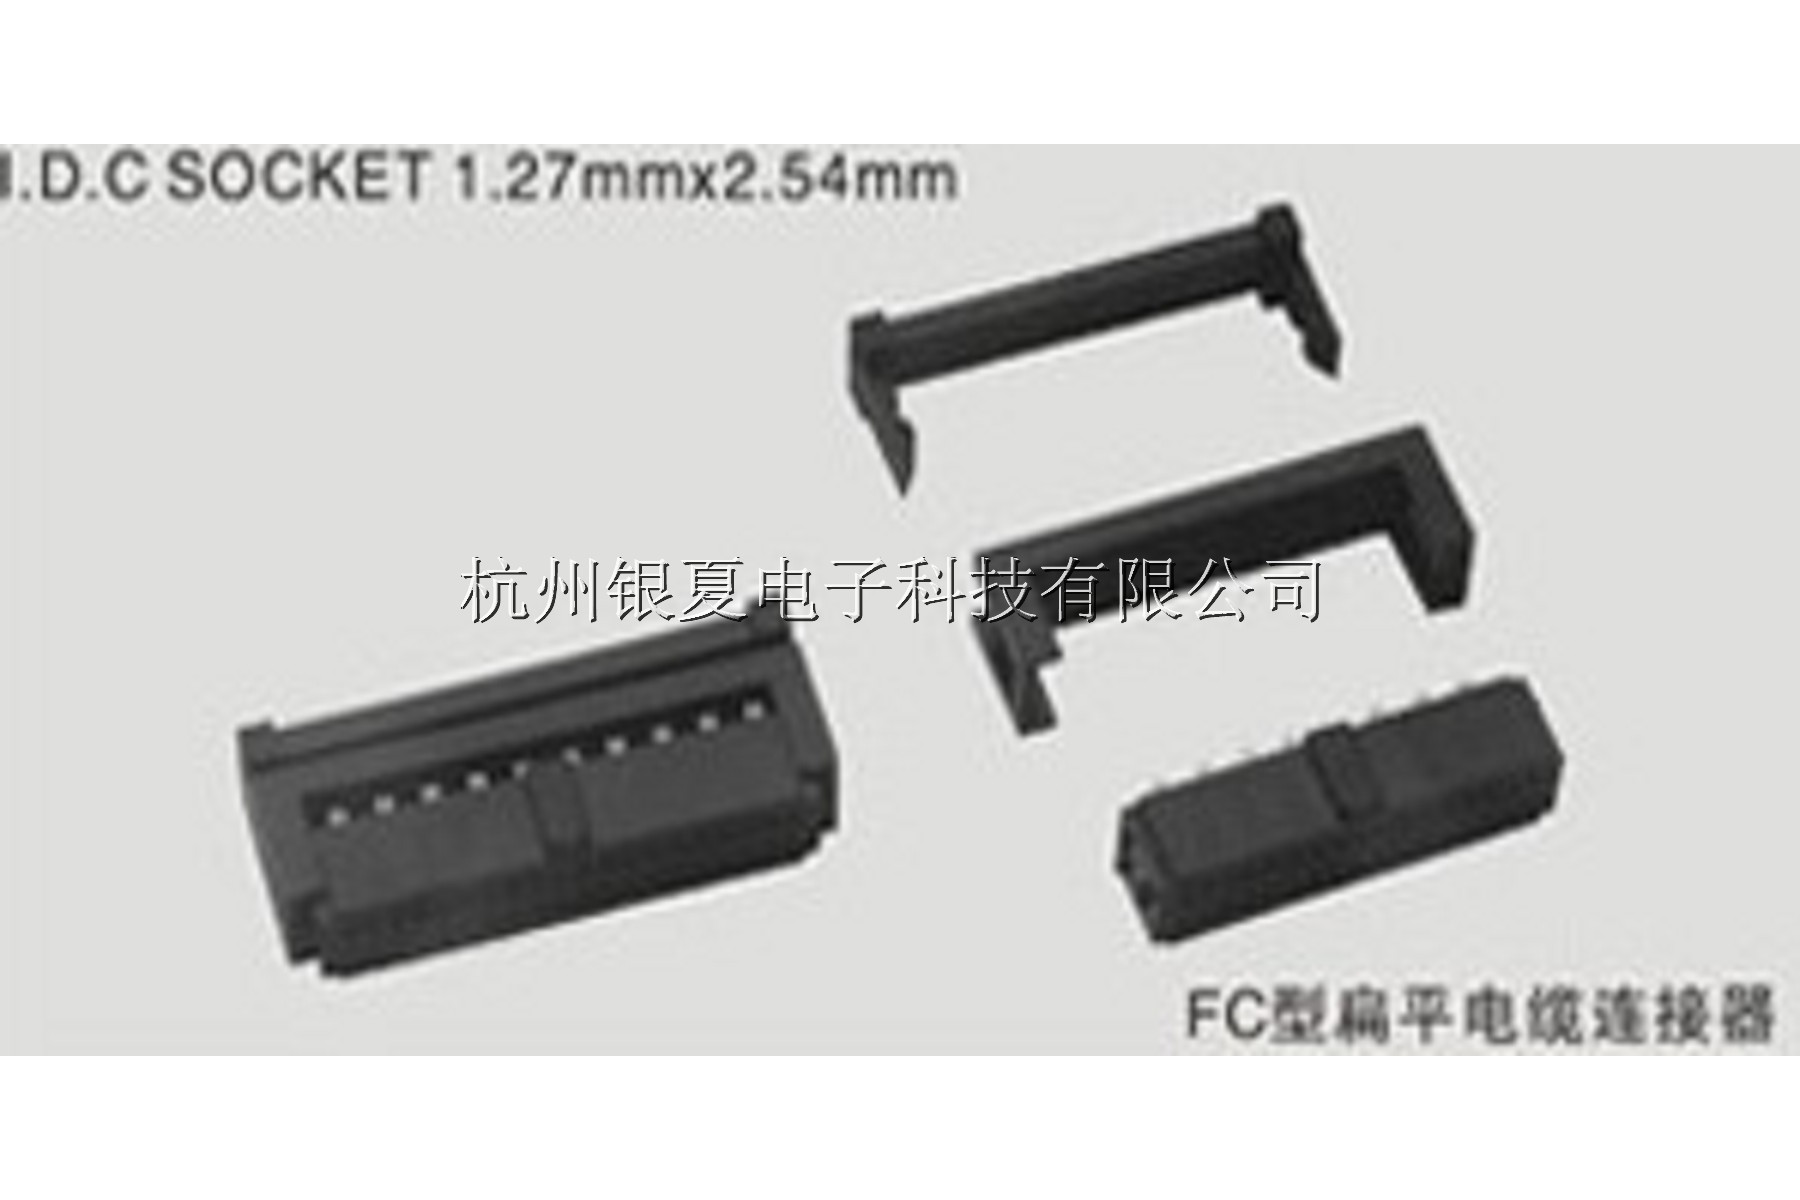 ⑤FC型扁平电缆连接器I.D.C SOCKET 1.27mm2.54 mm